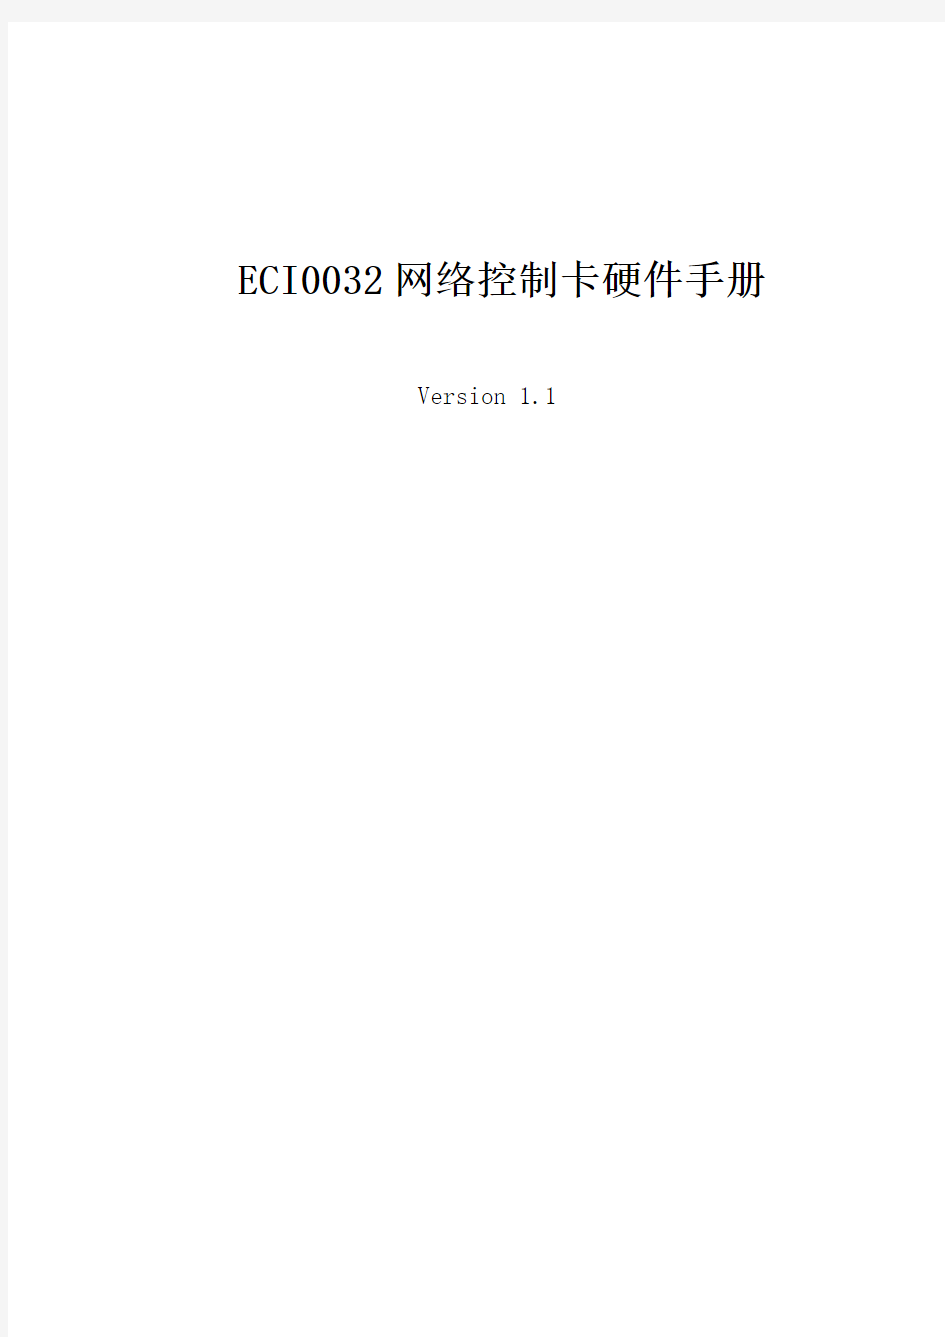 正运动技术-《ECI0032控制卡硬件手册》